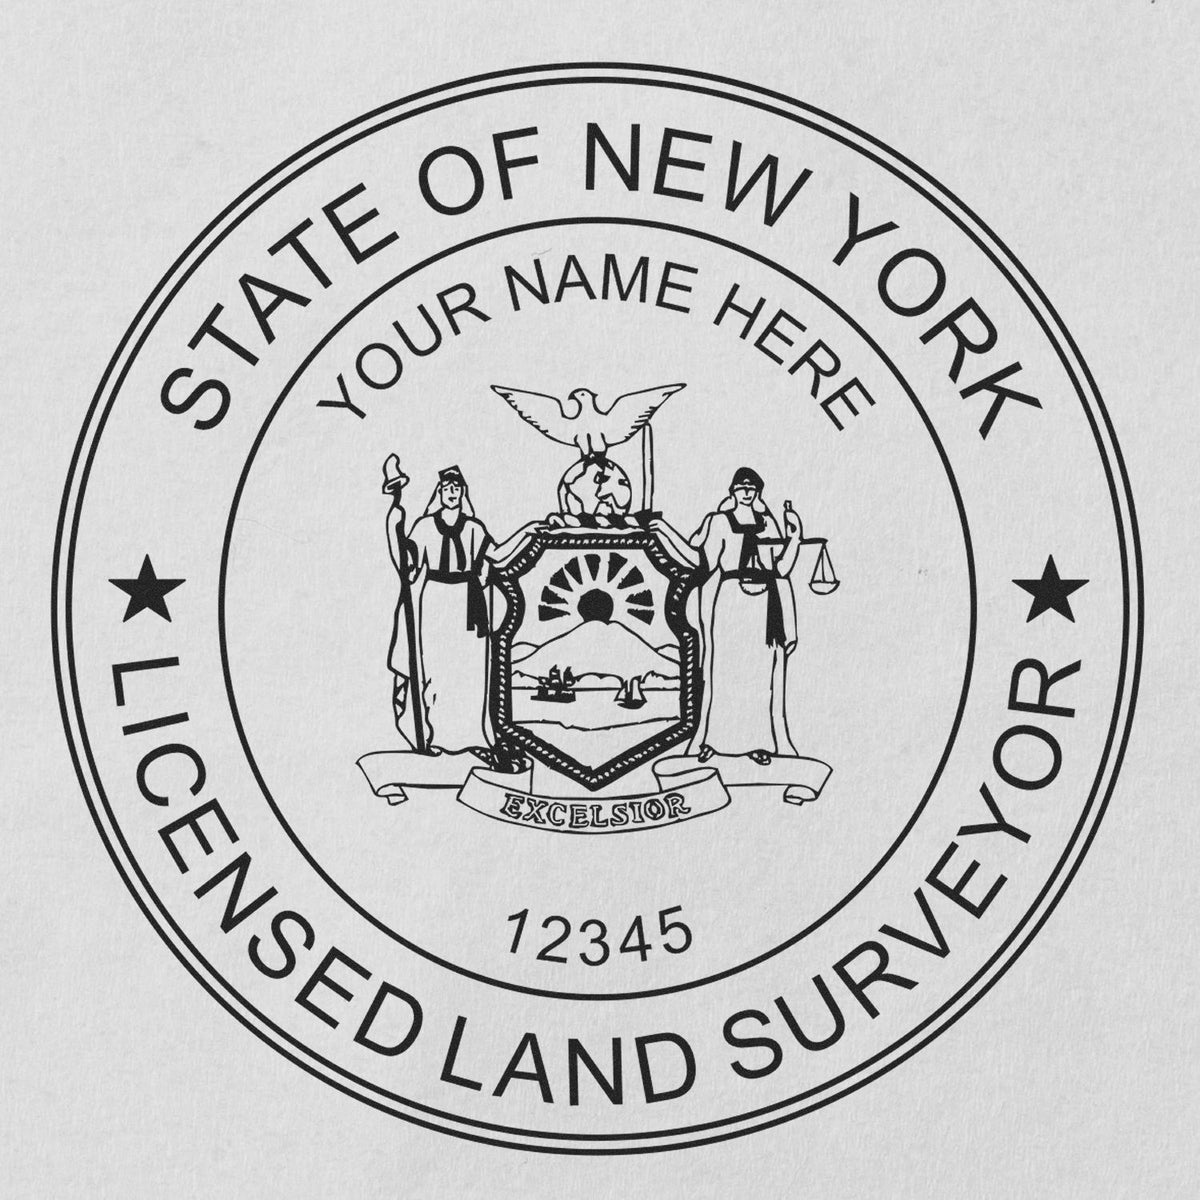 New York Land Surveyor Seal Stamp In Use Photo